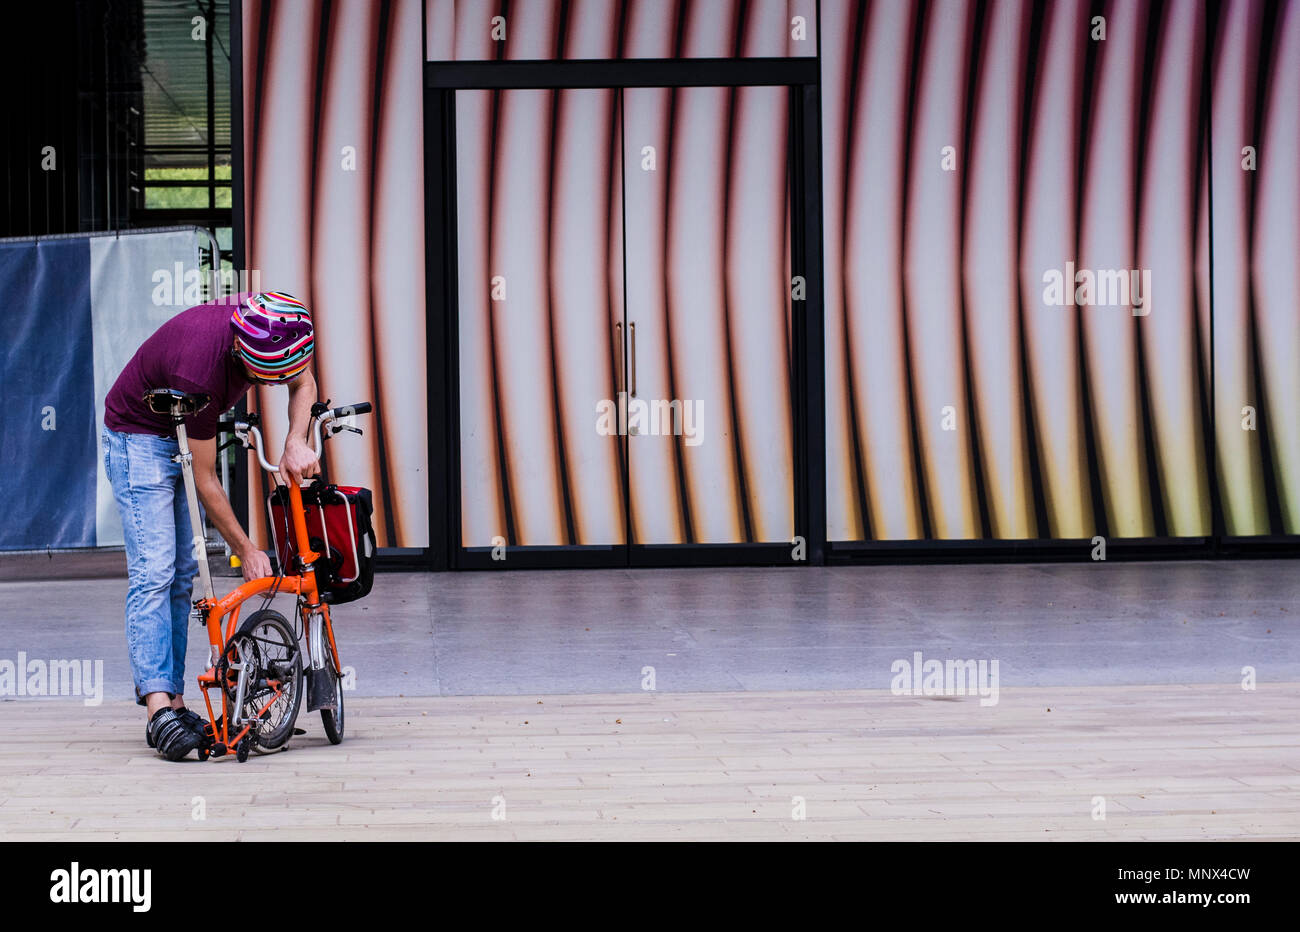 Mann mit einem bunt gestreiften Fahrrad Helm unforlding zusammenklappbare Fahrrad gegen einen gestreiften Hintergrund in Kings Cross, London, England, Großbritannien Stockfoto